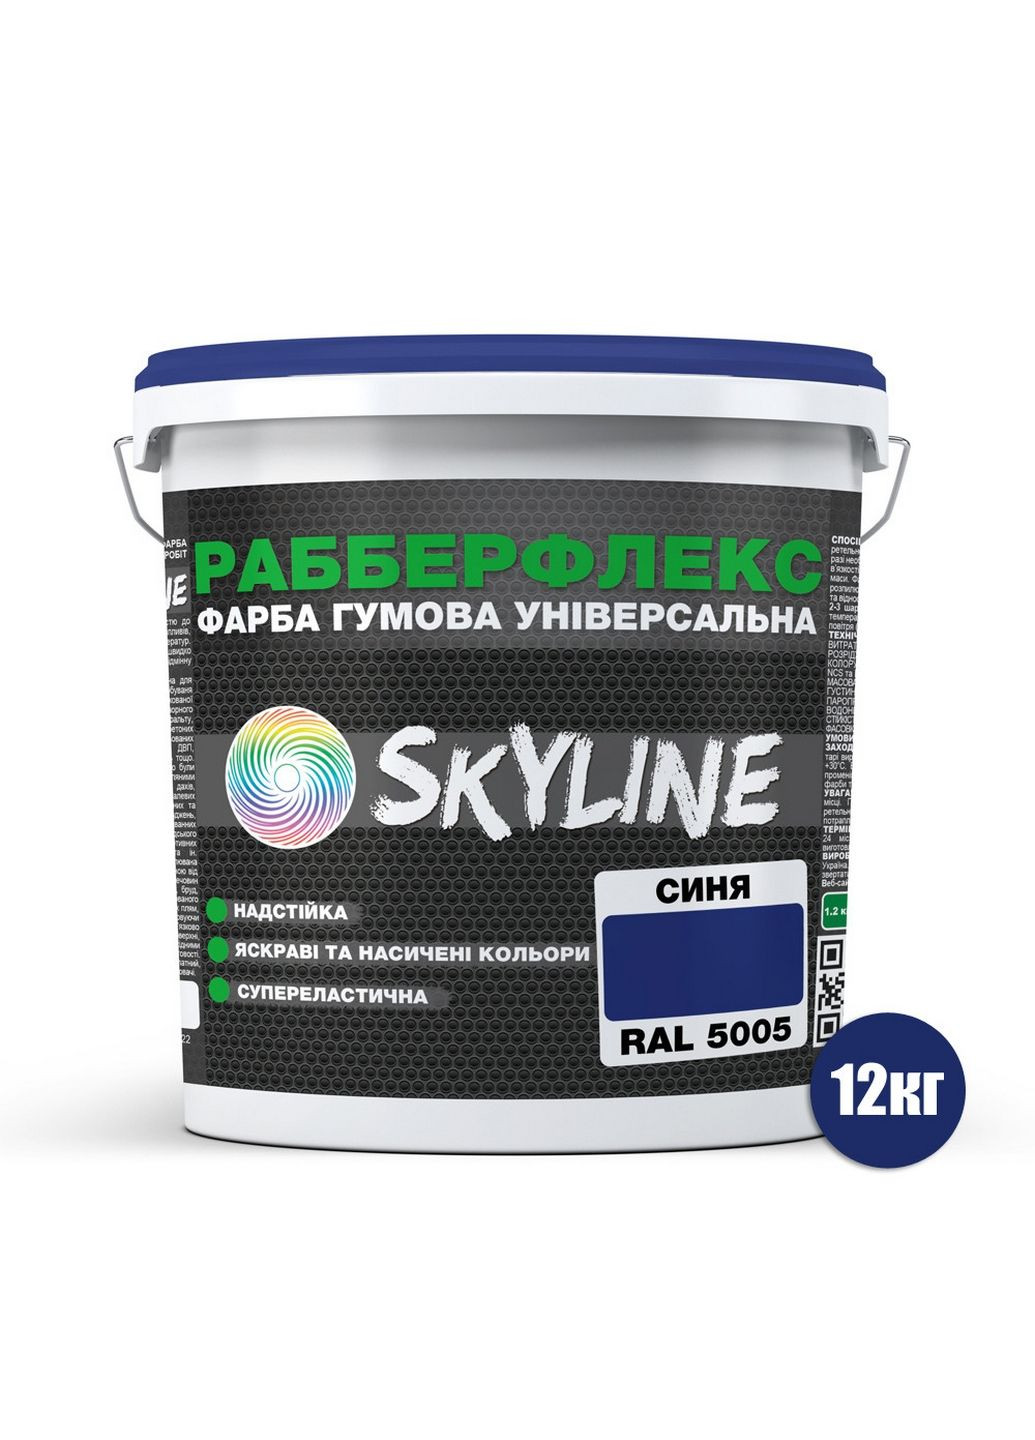 Надстійка фарба гумова супереластична «РабберФлекс» 12 кг SkyLine (289364708)